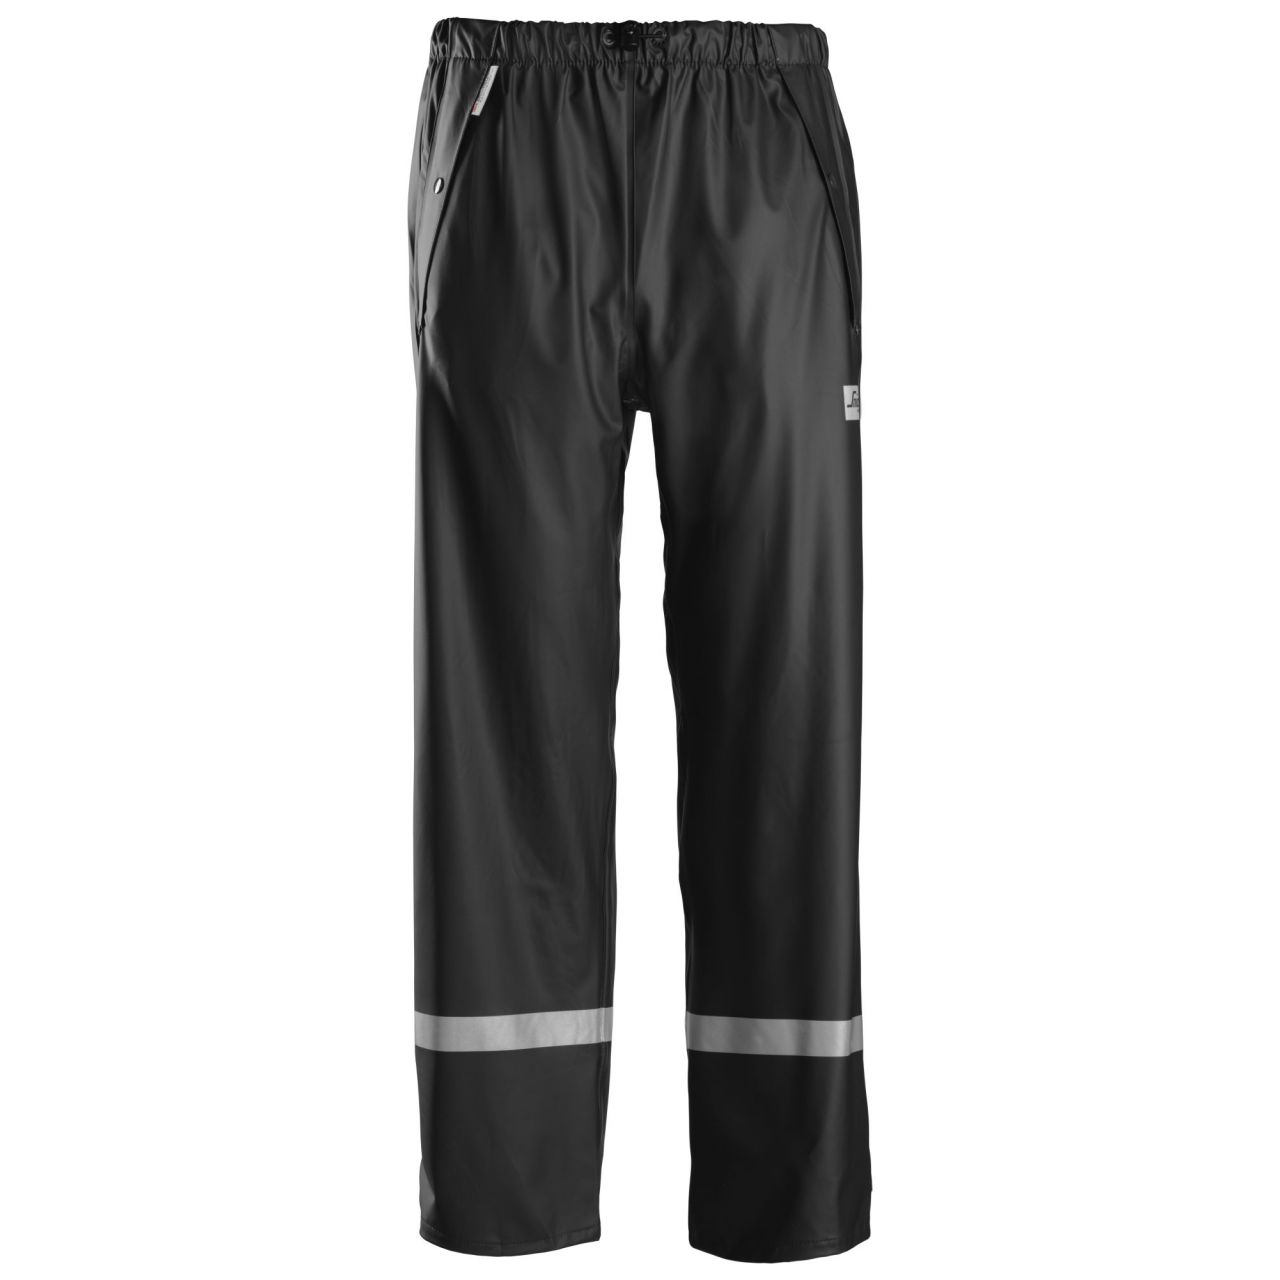 8201 Pantalón Impermeable PU negro talla XXXL